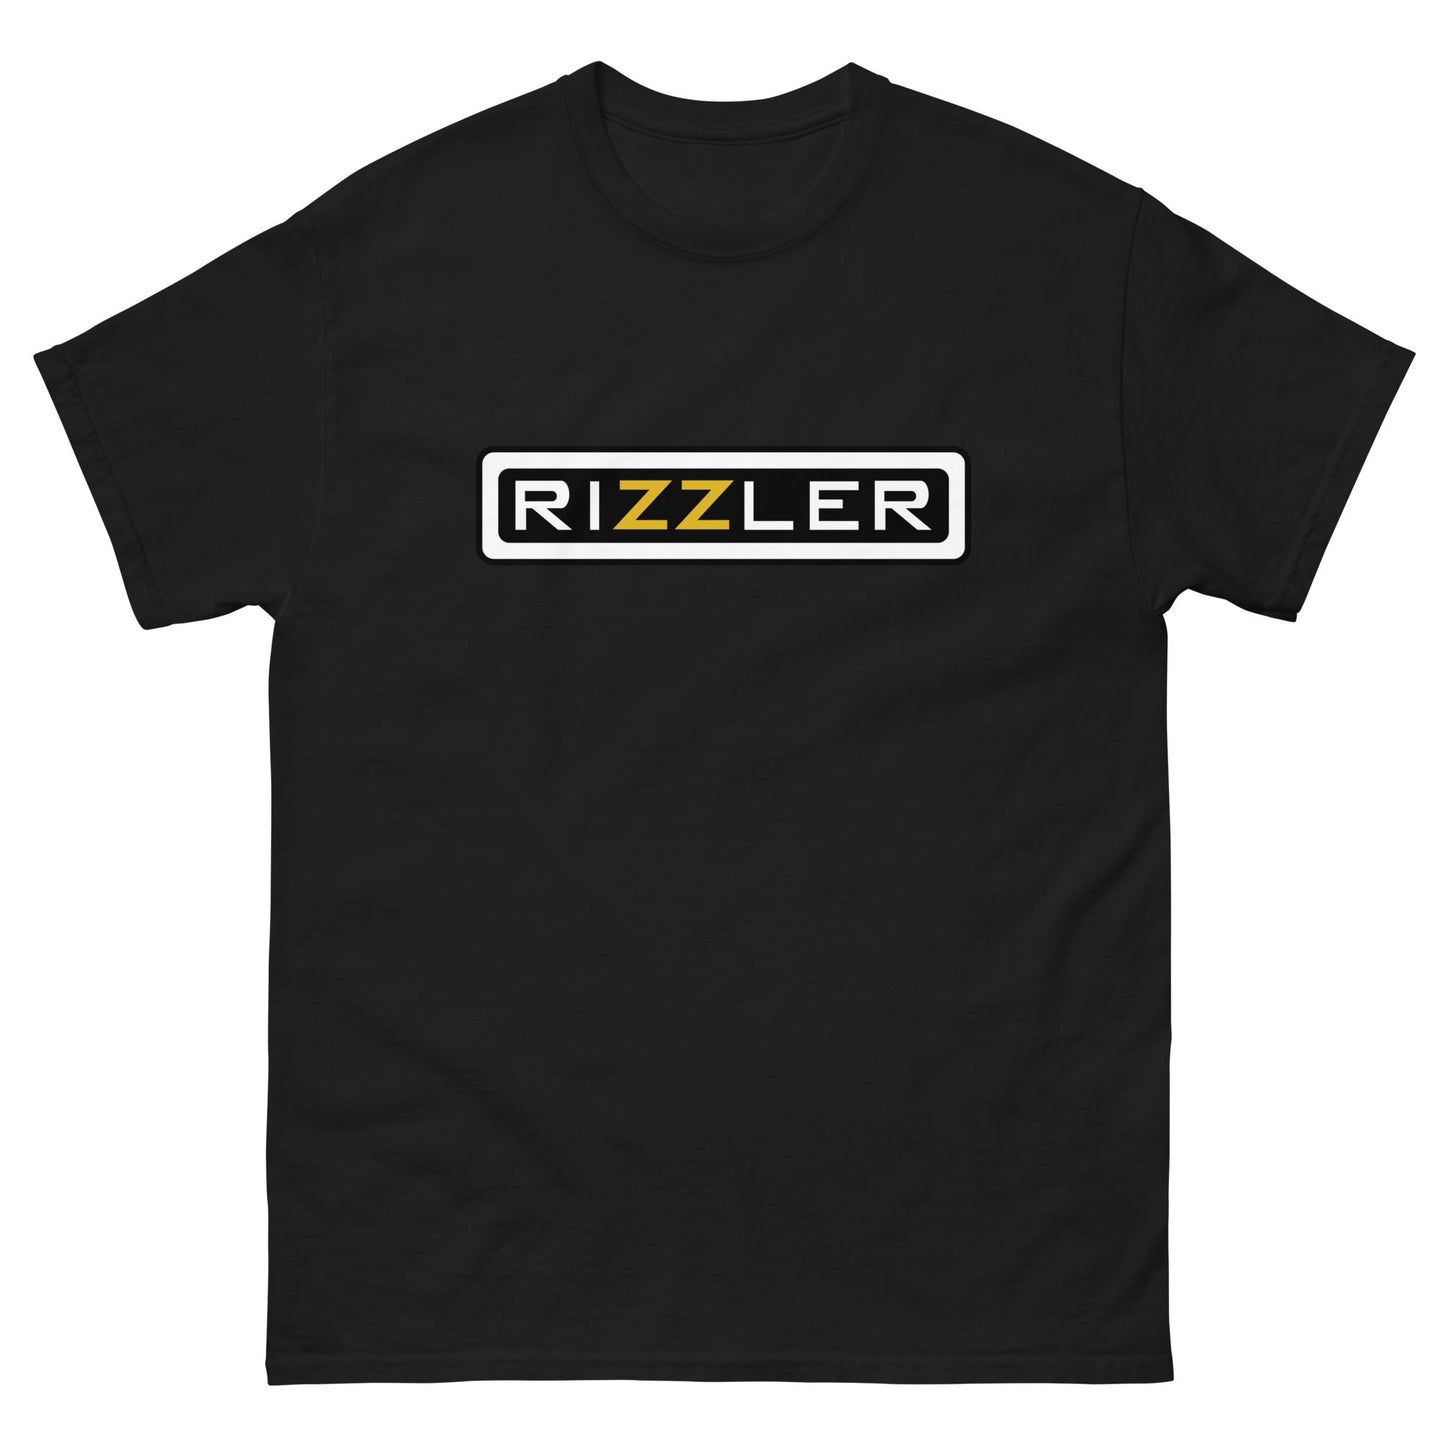 RIZZLER - HardShirts